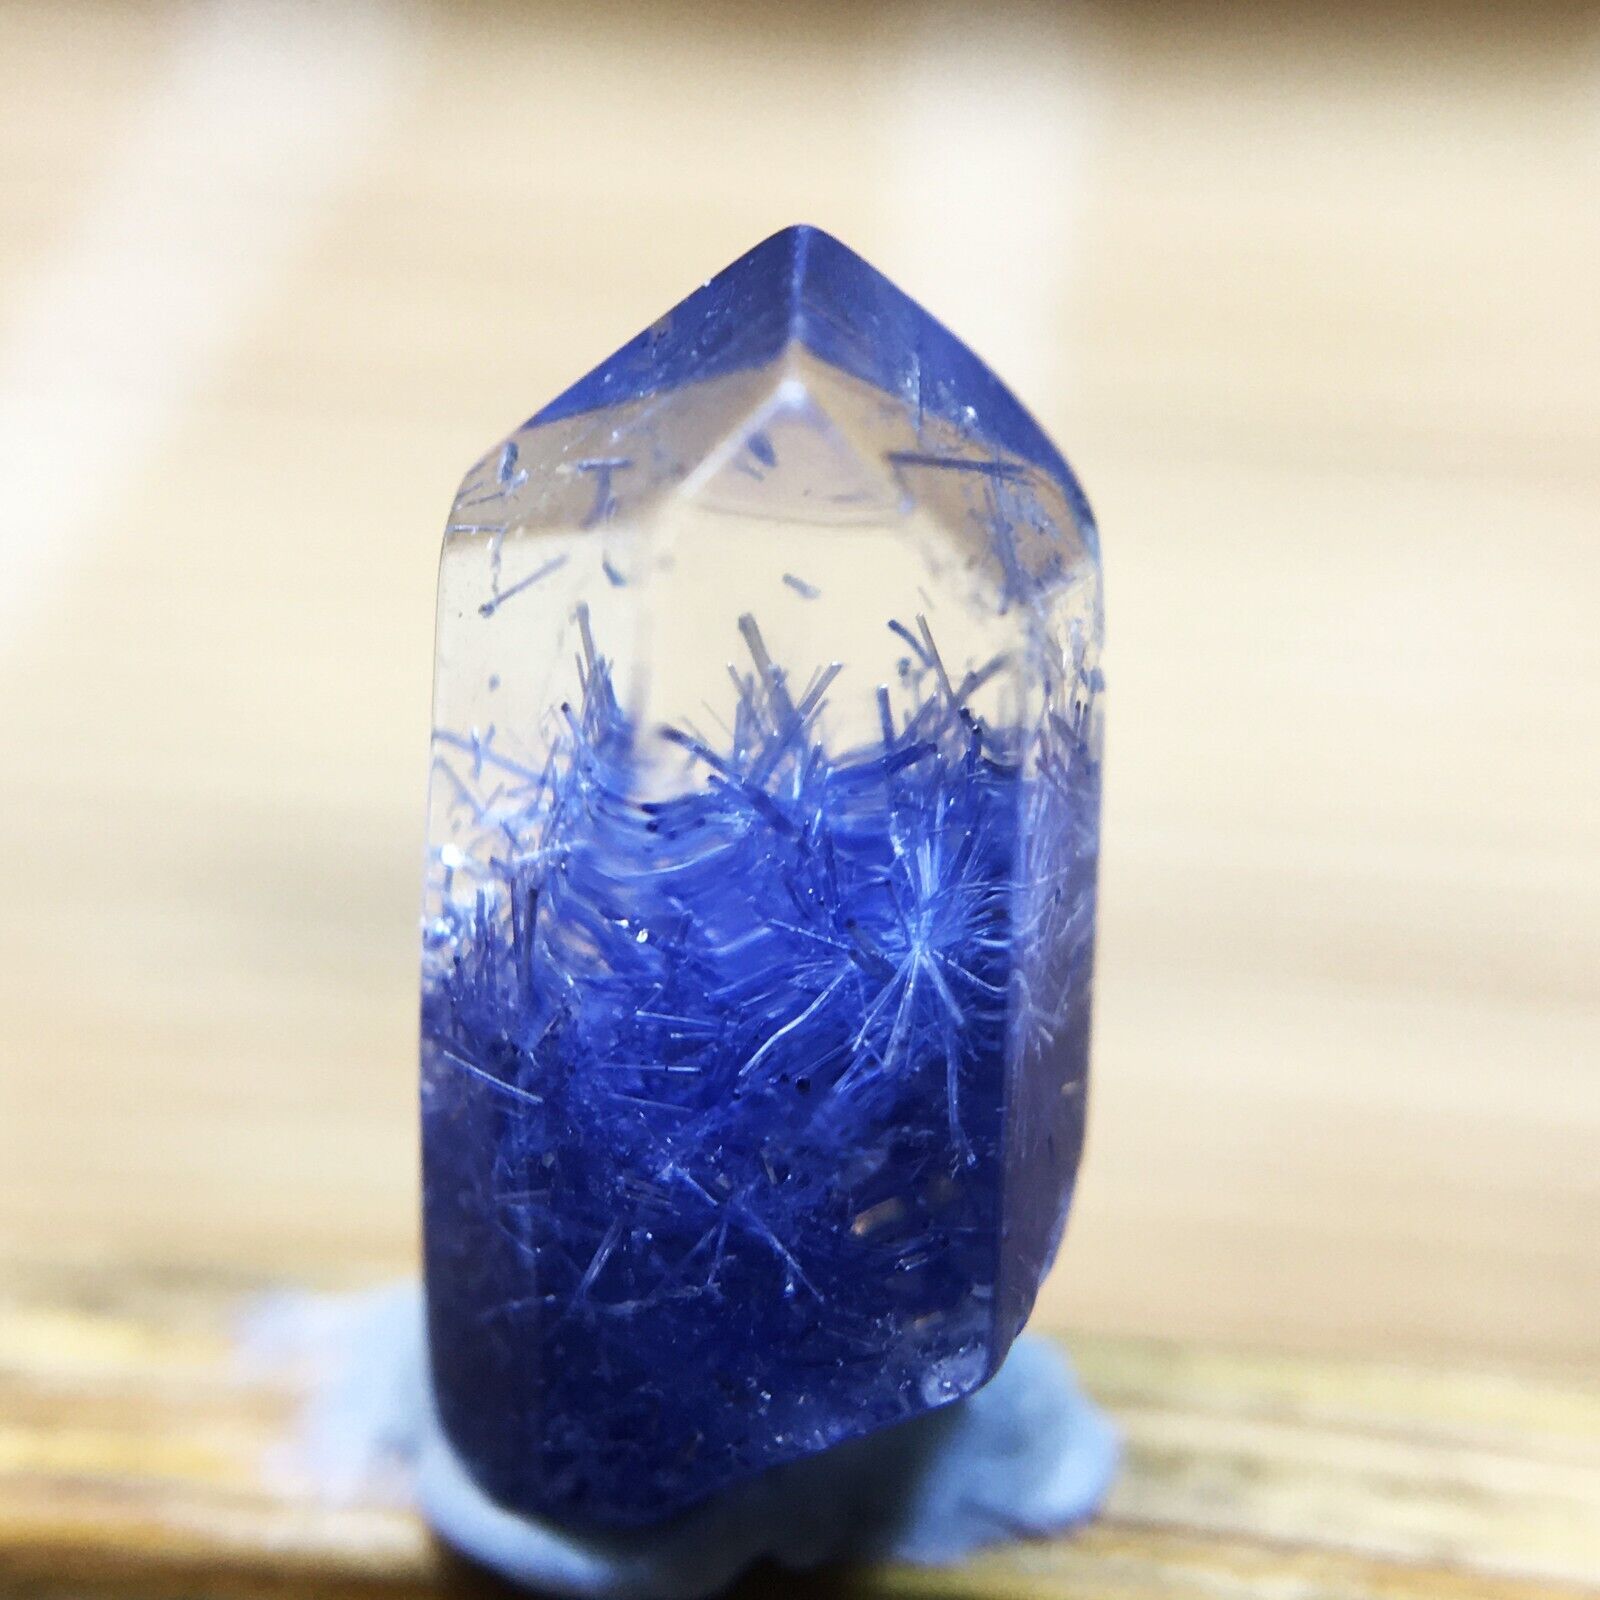 1.5Ct Very Rare NATURAL Beautiful Blue Dumortierite Quartz Crystal Specimen